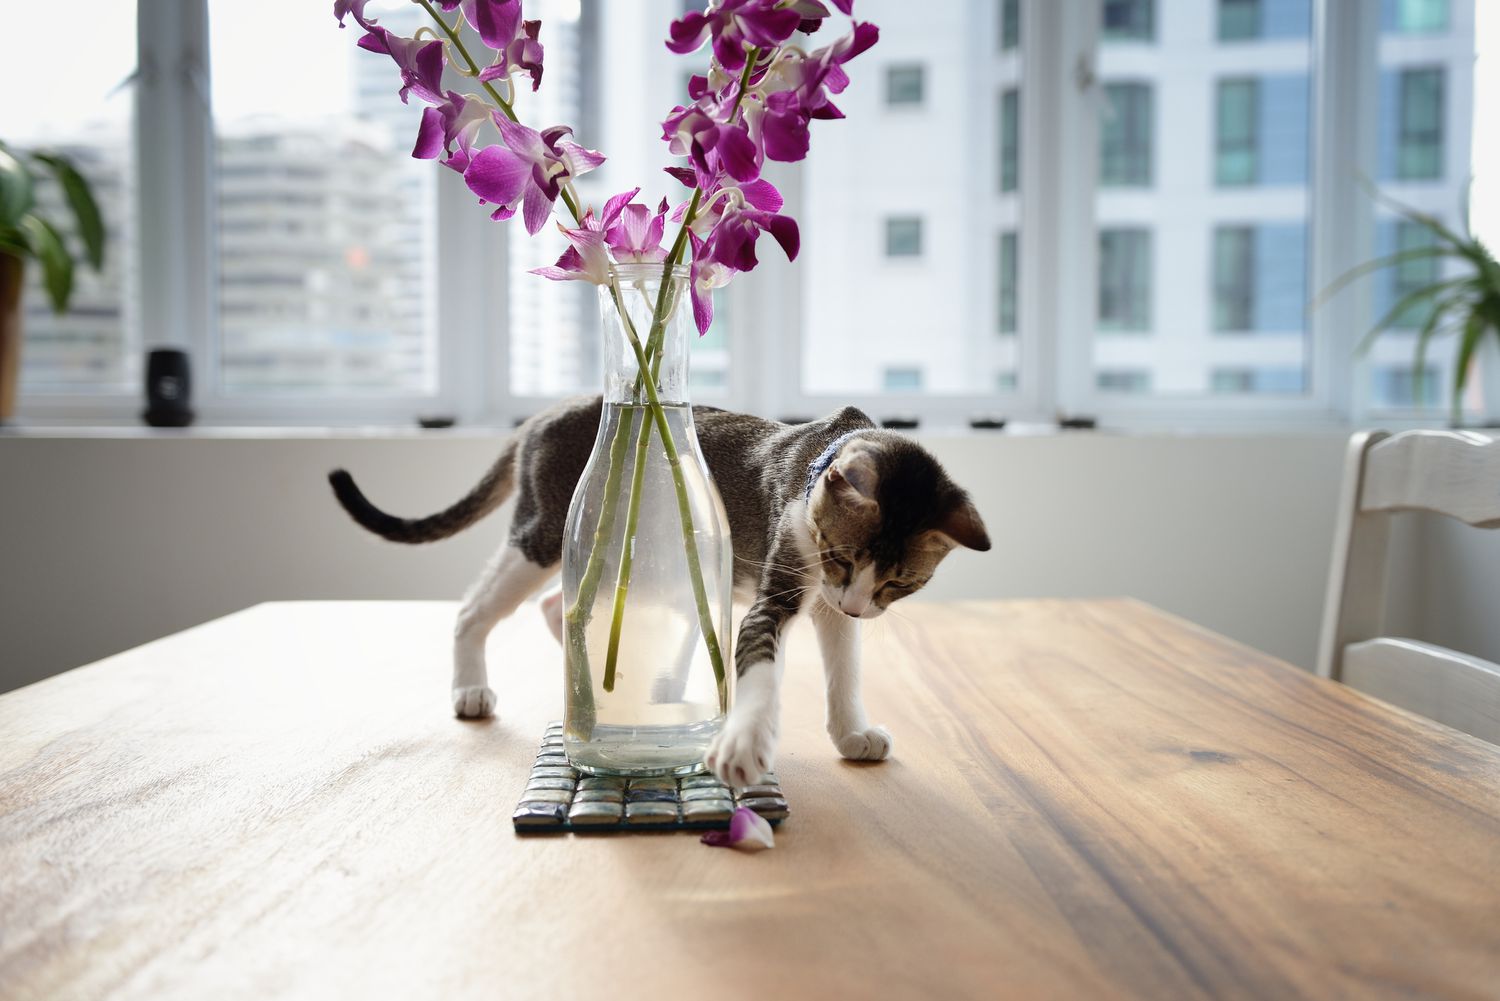 Gato jugando con pétalo de orquídea sobre una mesa.